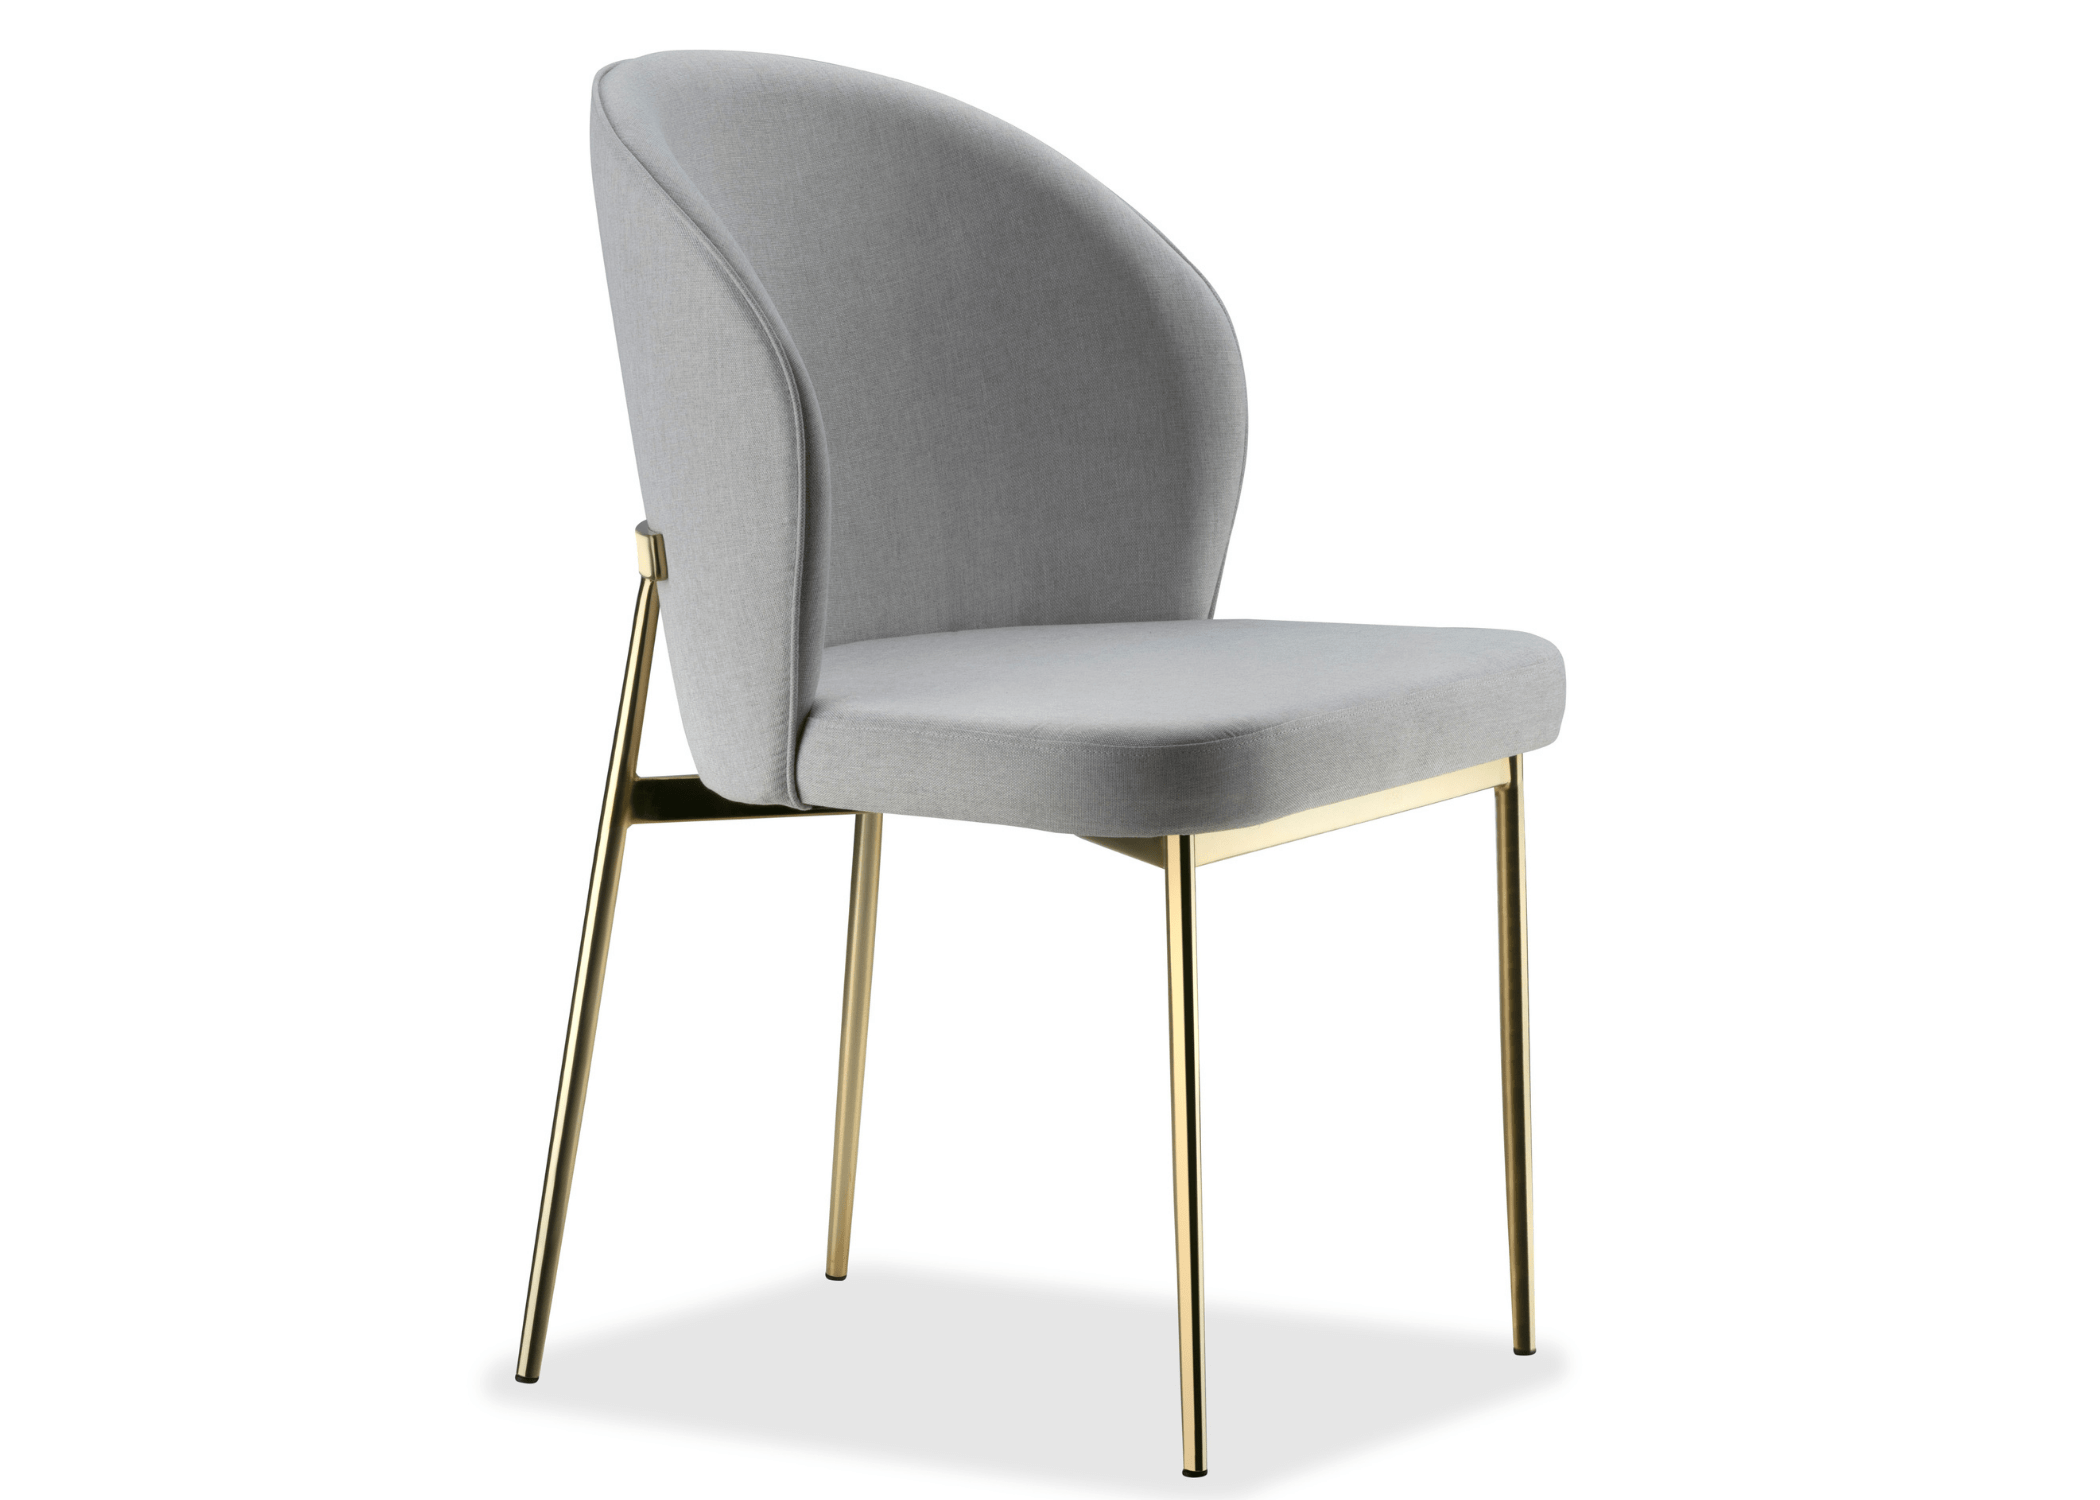 Design minimalista: elegante na Cadeira Noa.